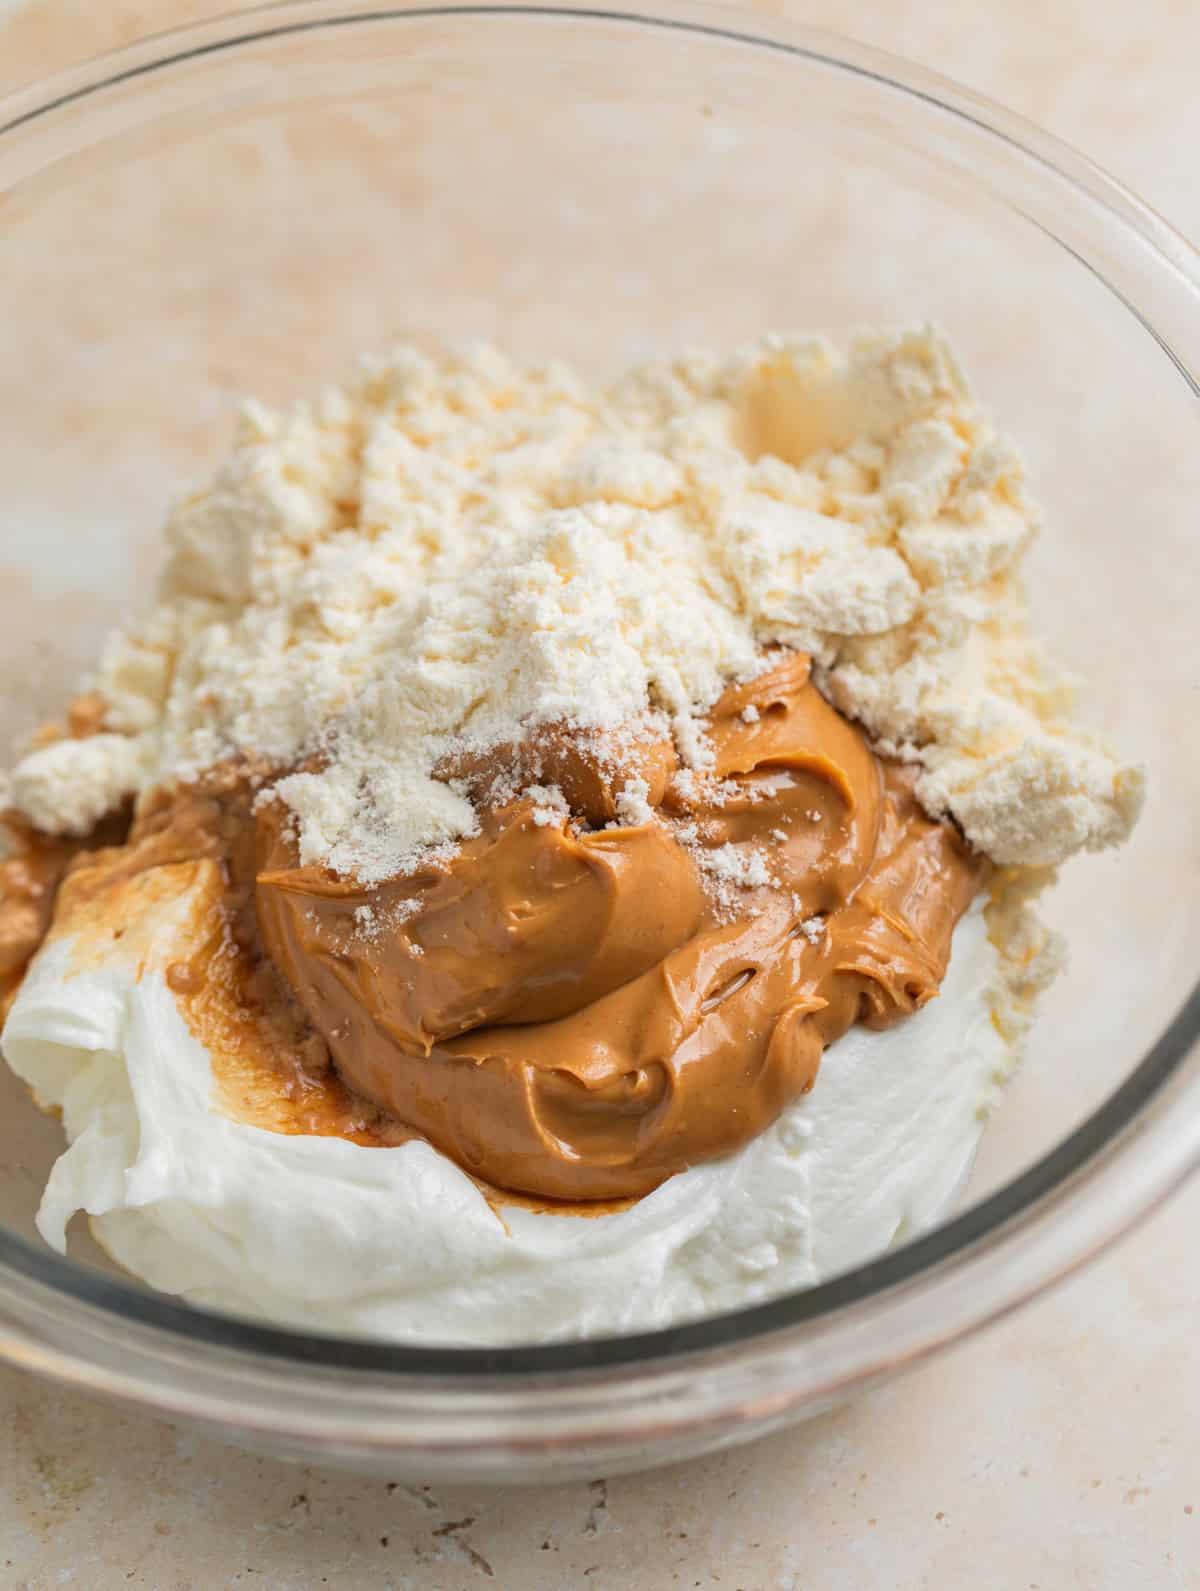 Peanut butter, plain Greek yogurt, protein powder and vanilla in glass mixing bowl.